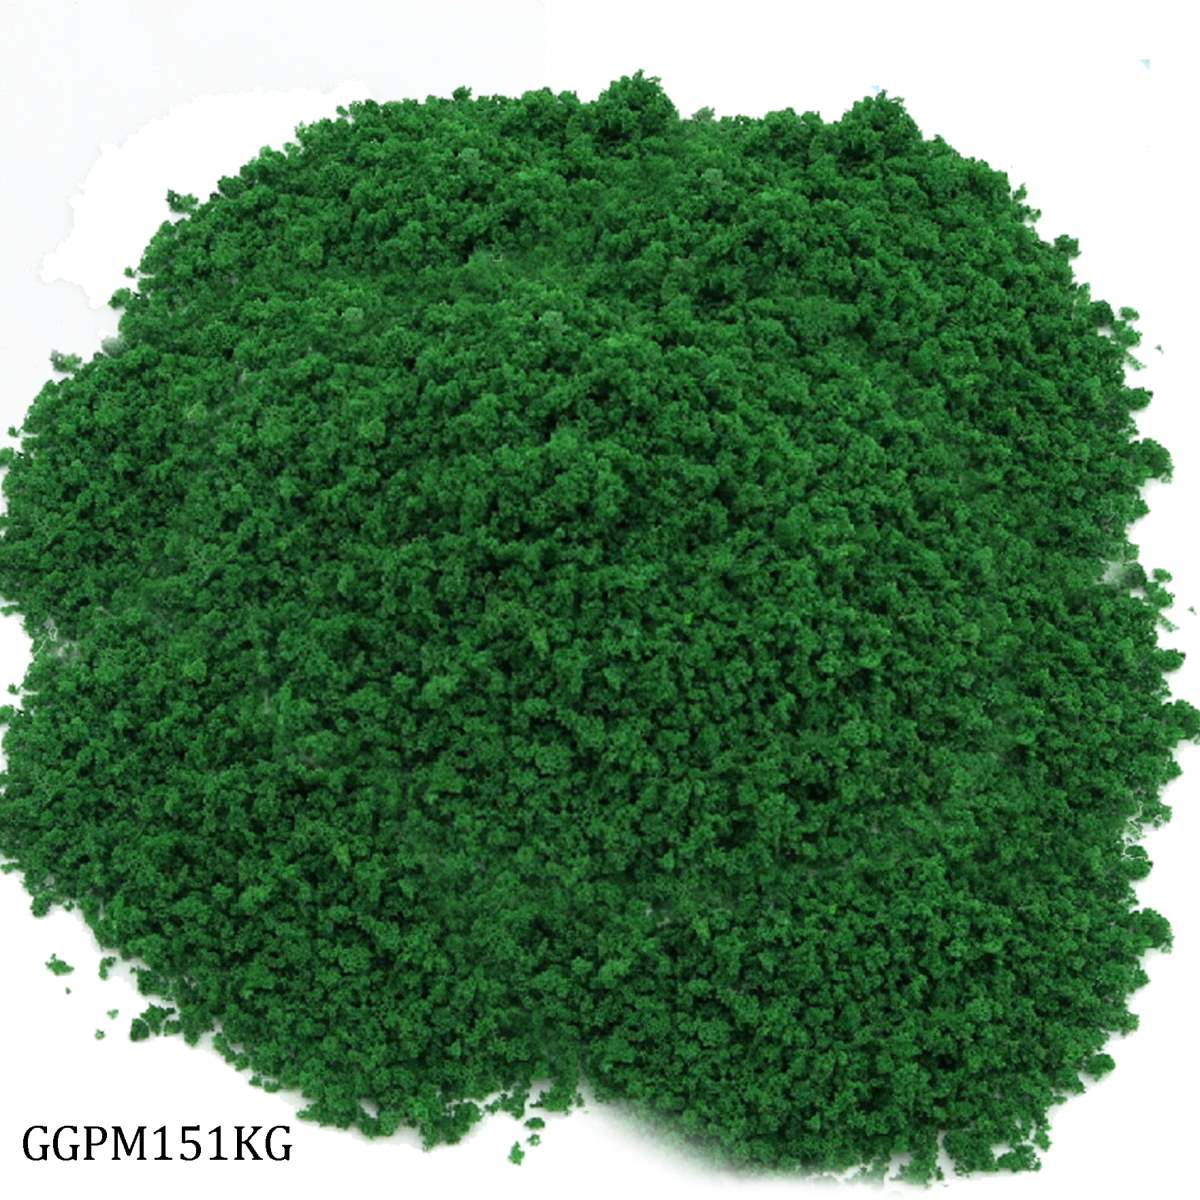 jags-mumbai Artificial Grass Garden Grass Powder Green Shade 1Kg Pkd